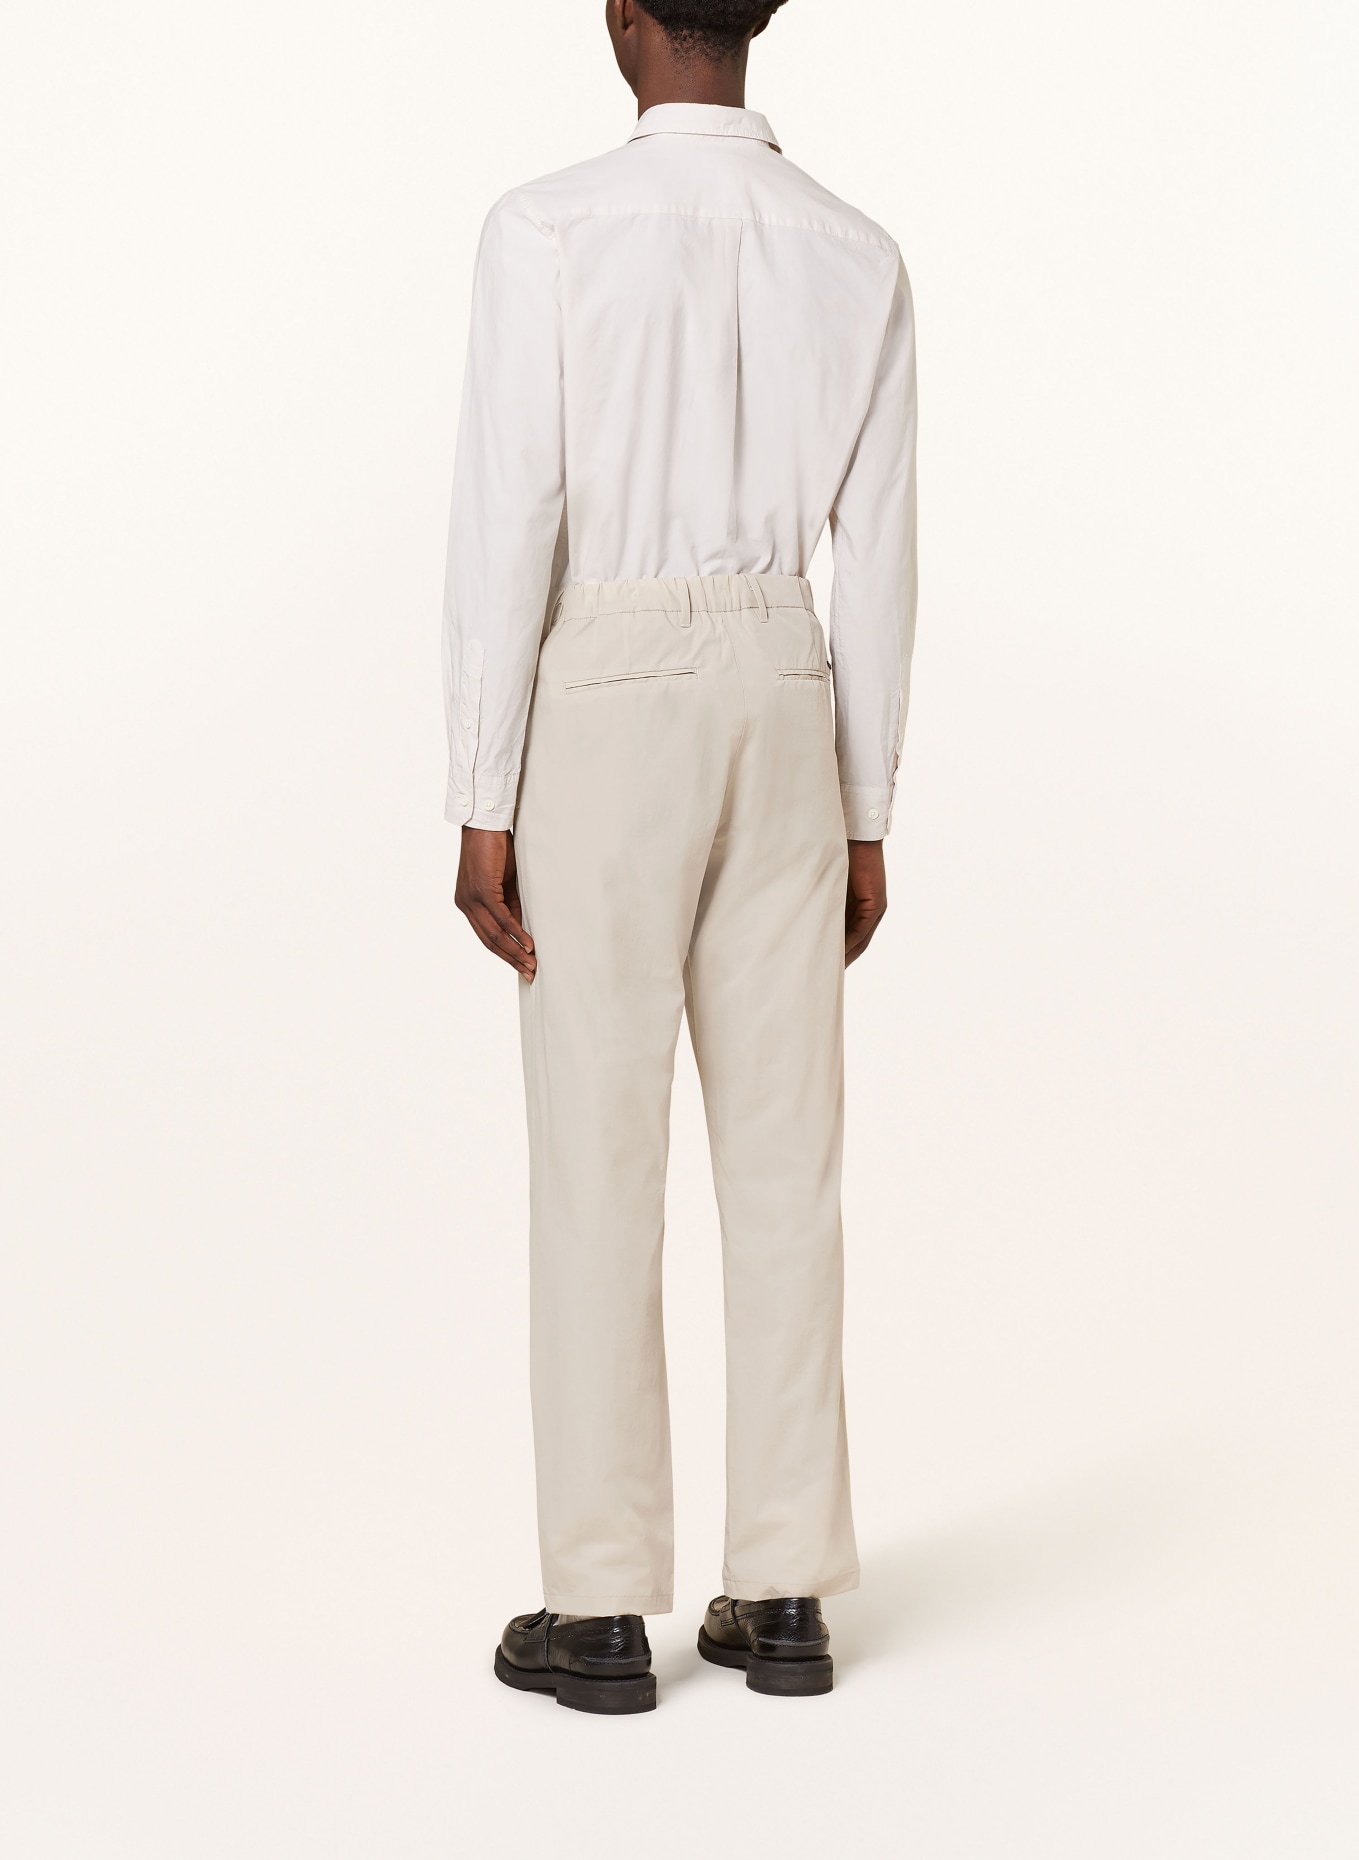 NORSE PROJECTS Suit trousers AAREN regular fit, Color: 0920 Light Khaki (Image 4)